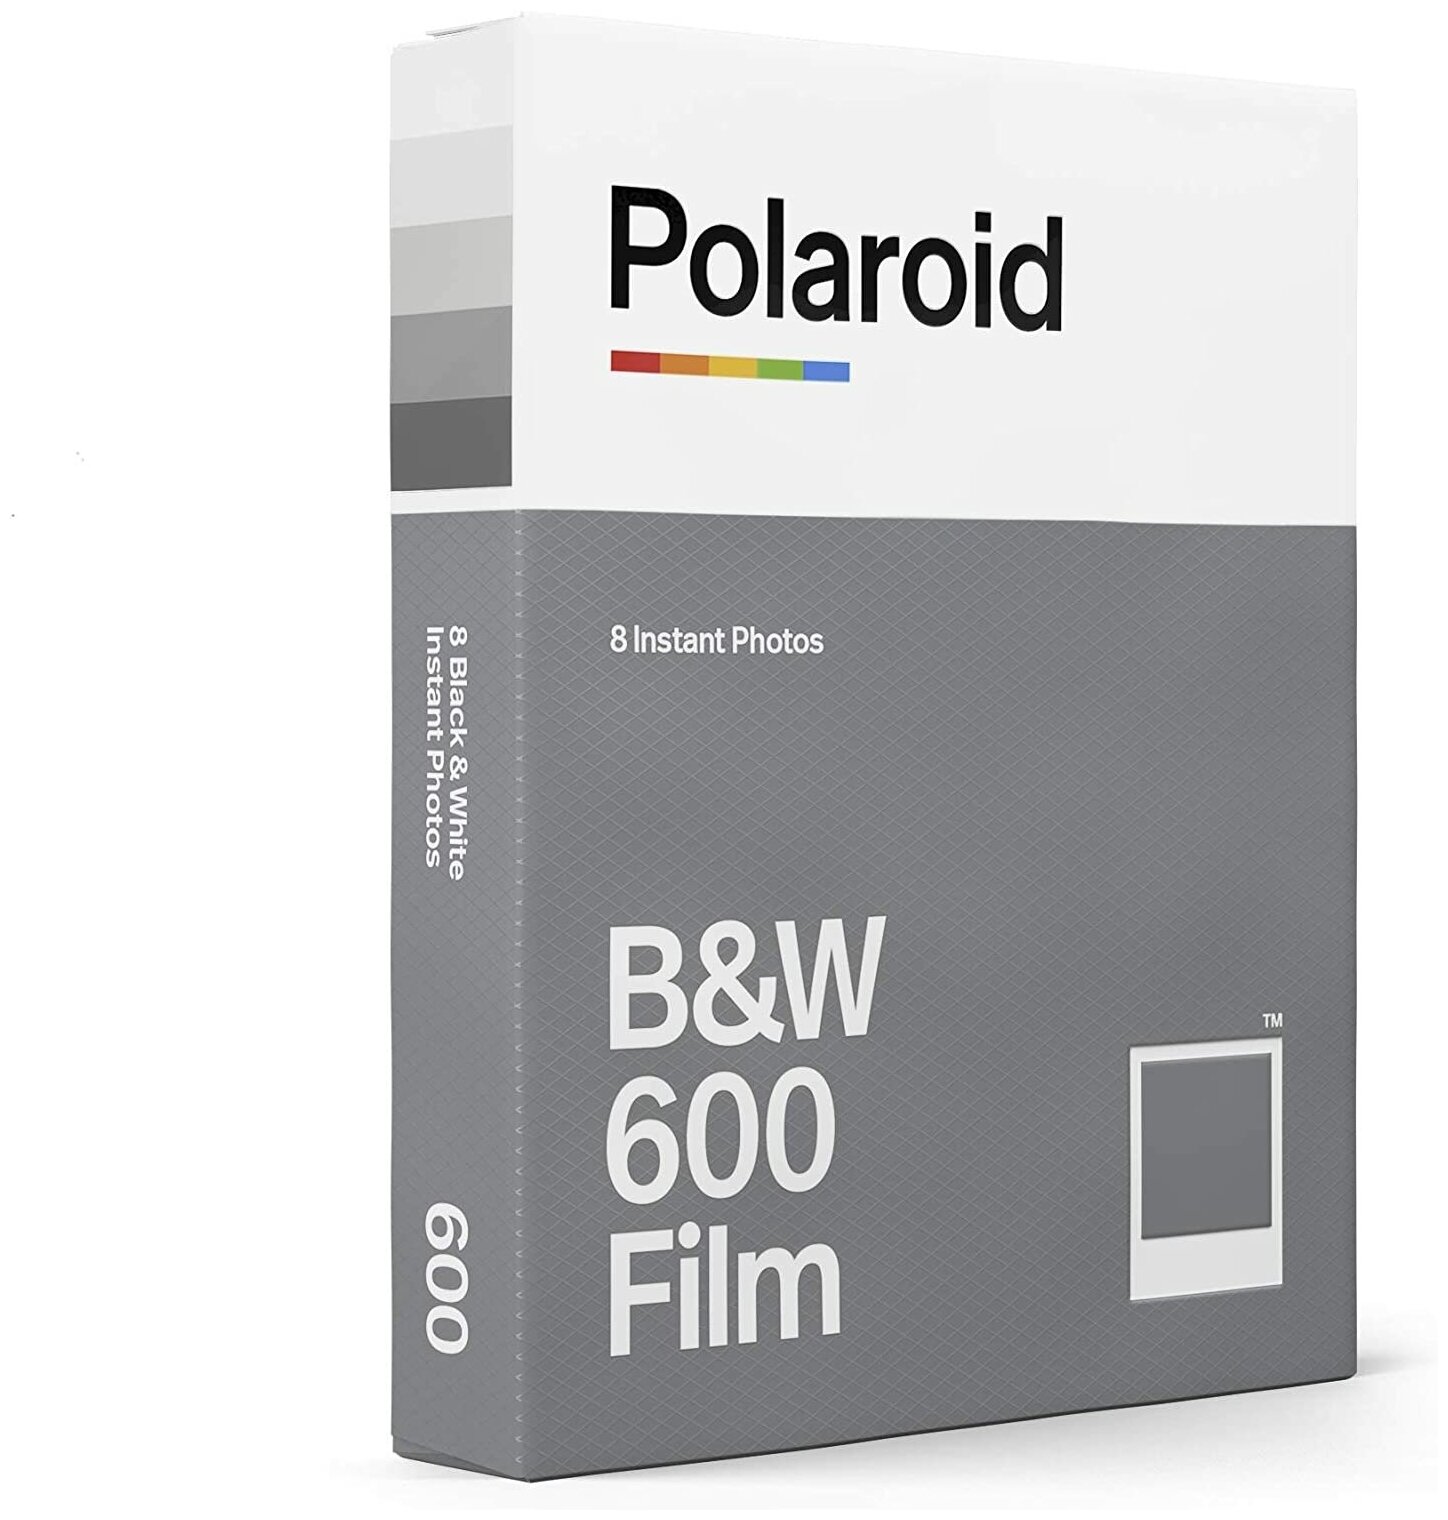  Polaroid BW 600 Film   8 